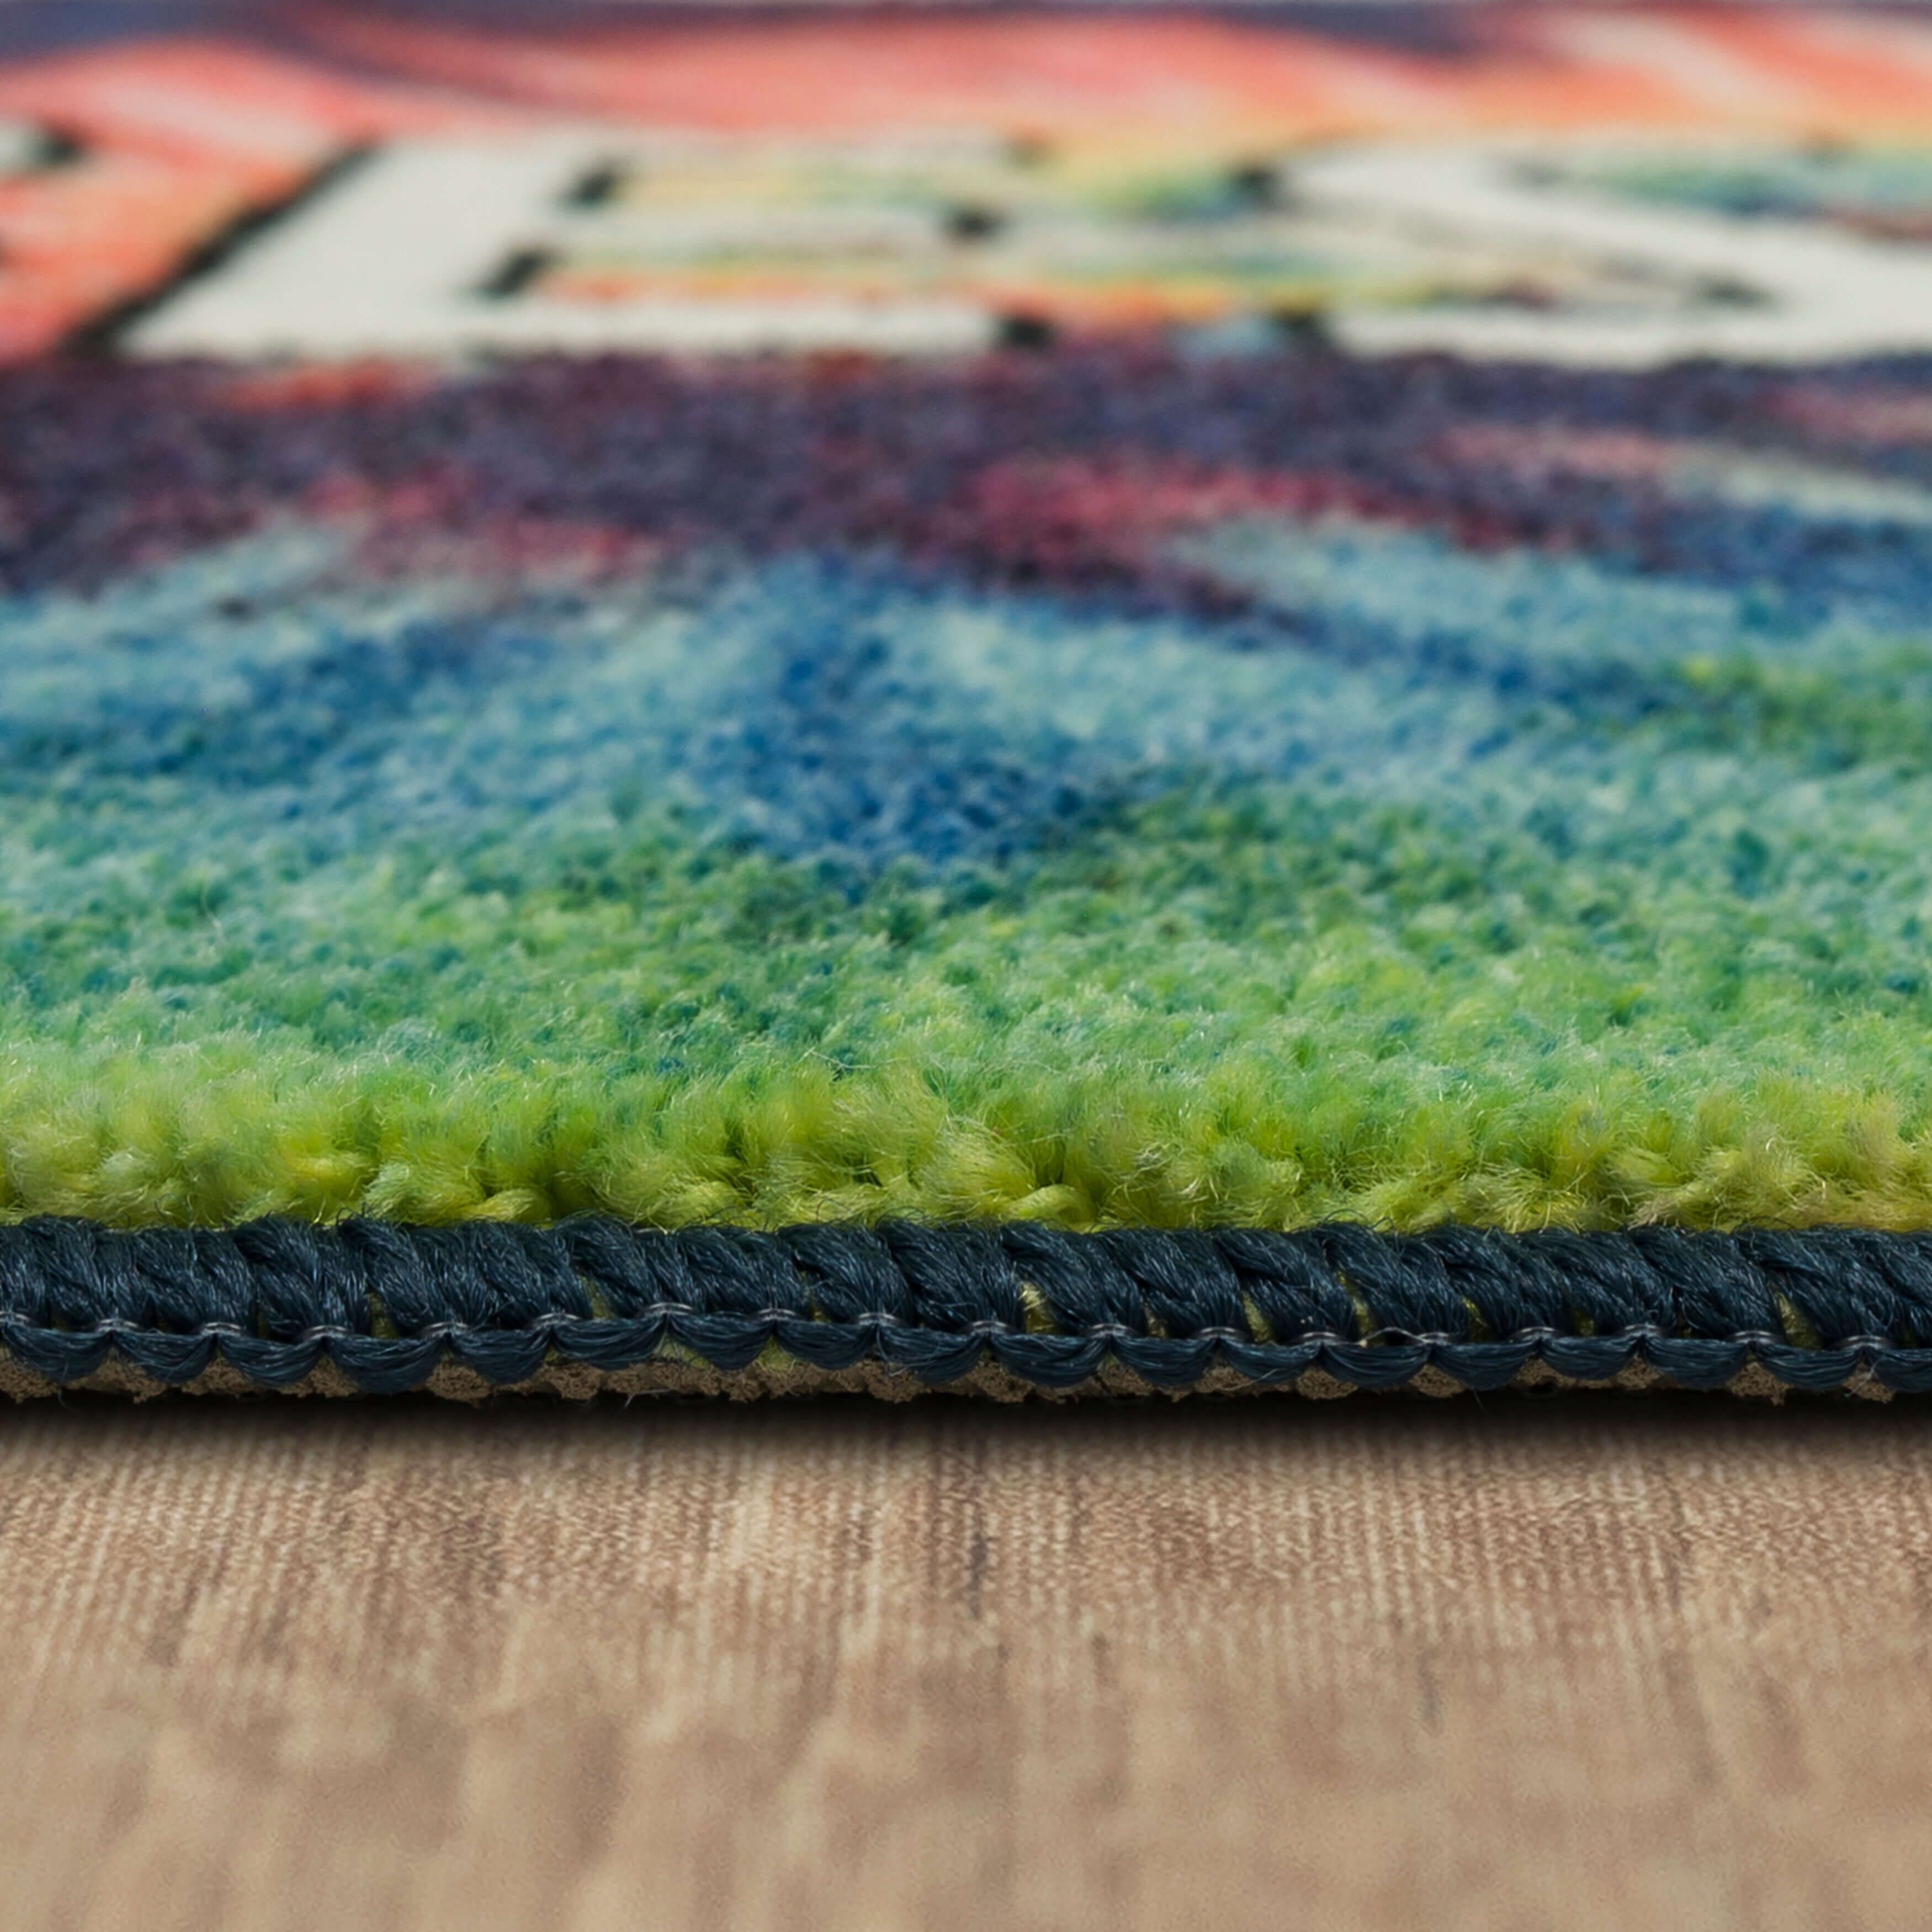 GelPro Designer Comfort Summer Fruit Kitchen Floor Mat, Sand, 20 inchx 32 inch, Sand